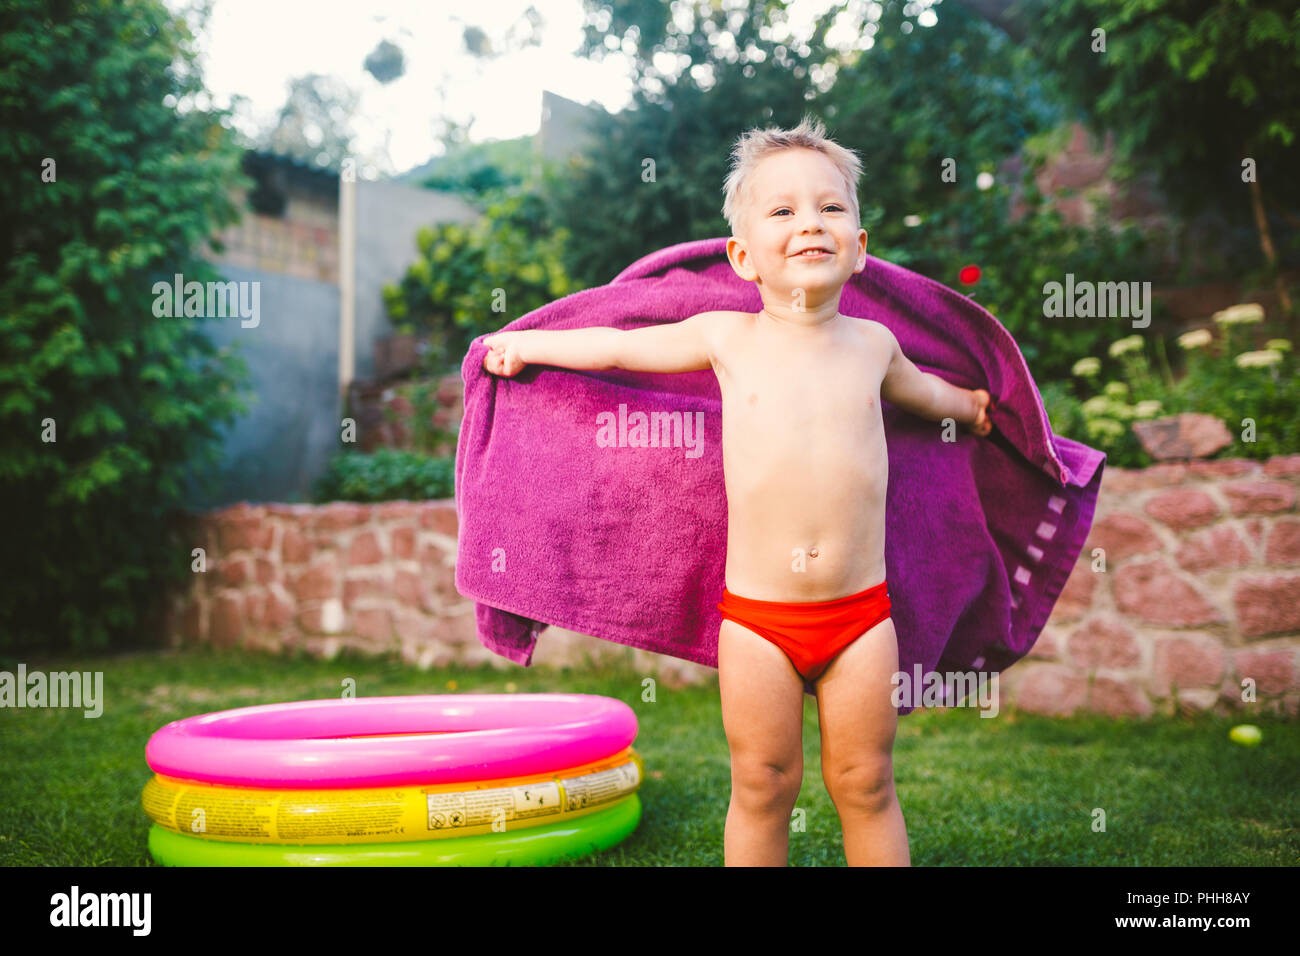 Sommer Urlaub Thema. Eine kleine 3 jährige Kaukasier Junge spielt im Hinterhof eines Hauses auf dem Gras in der Nähe von eine Runde aufblasbare farbige Pool u gewickelt Stockfoto